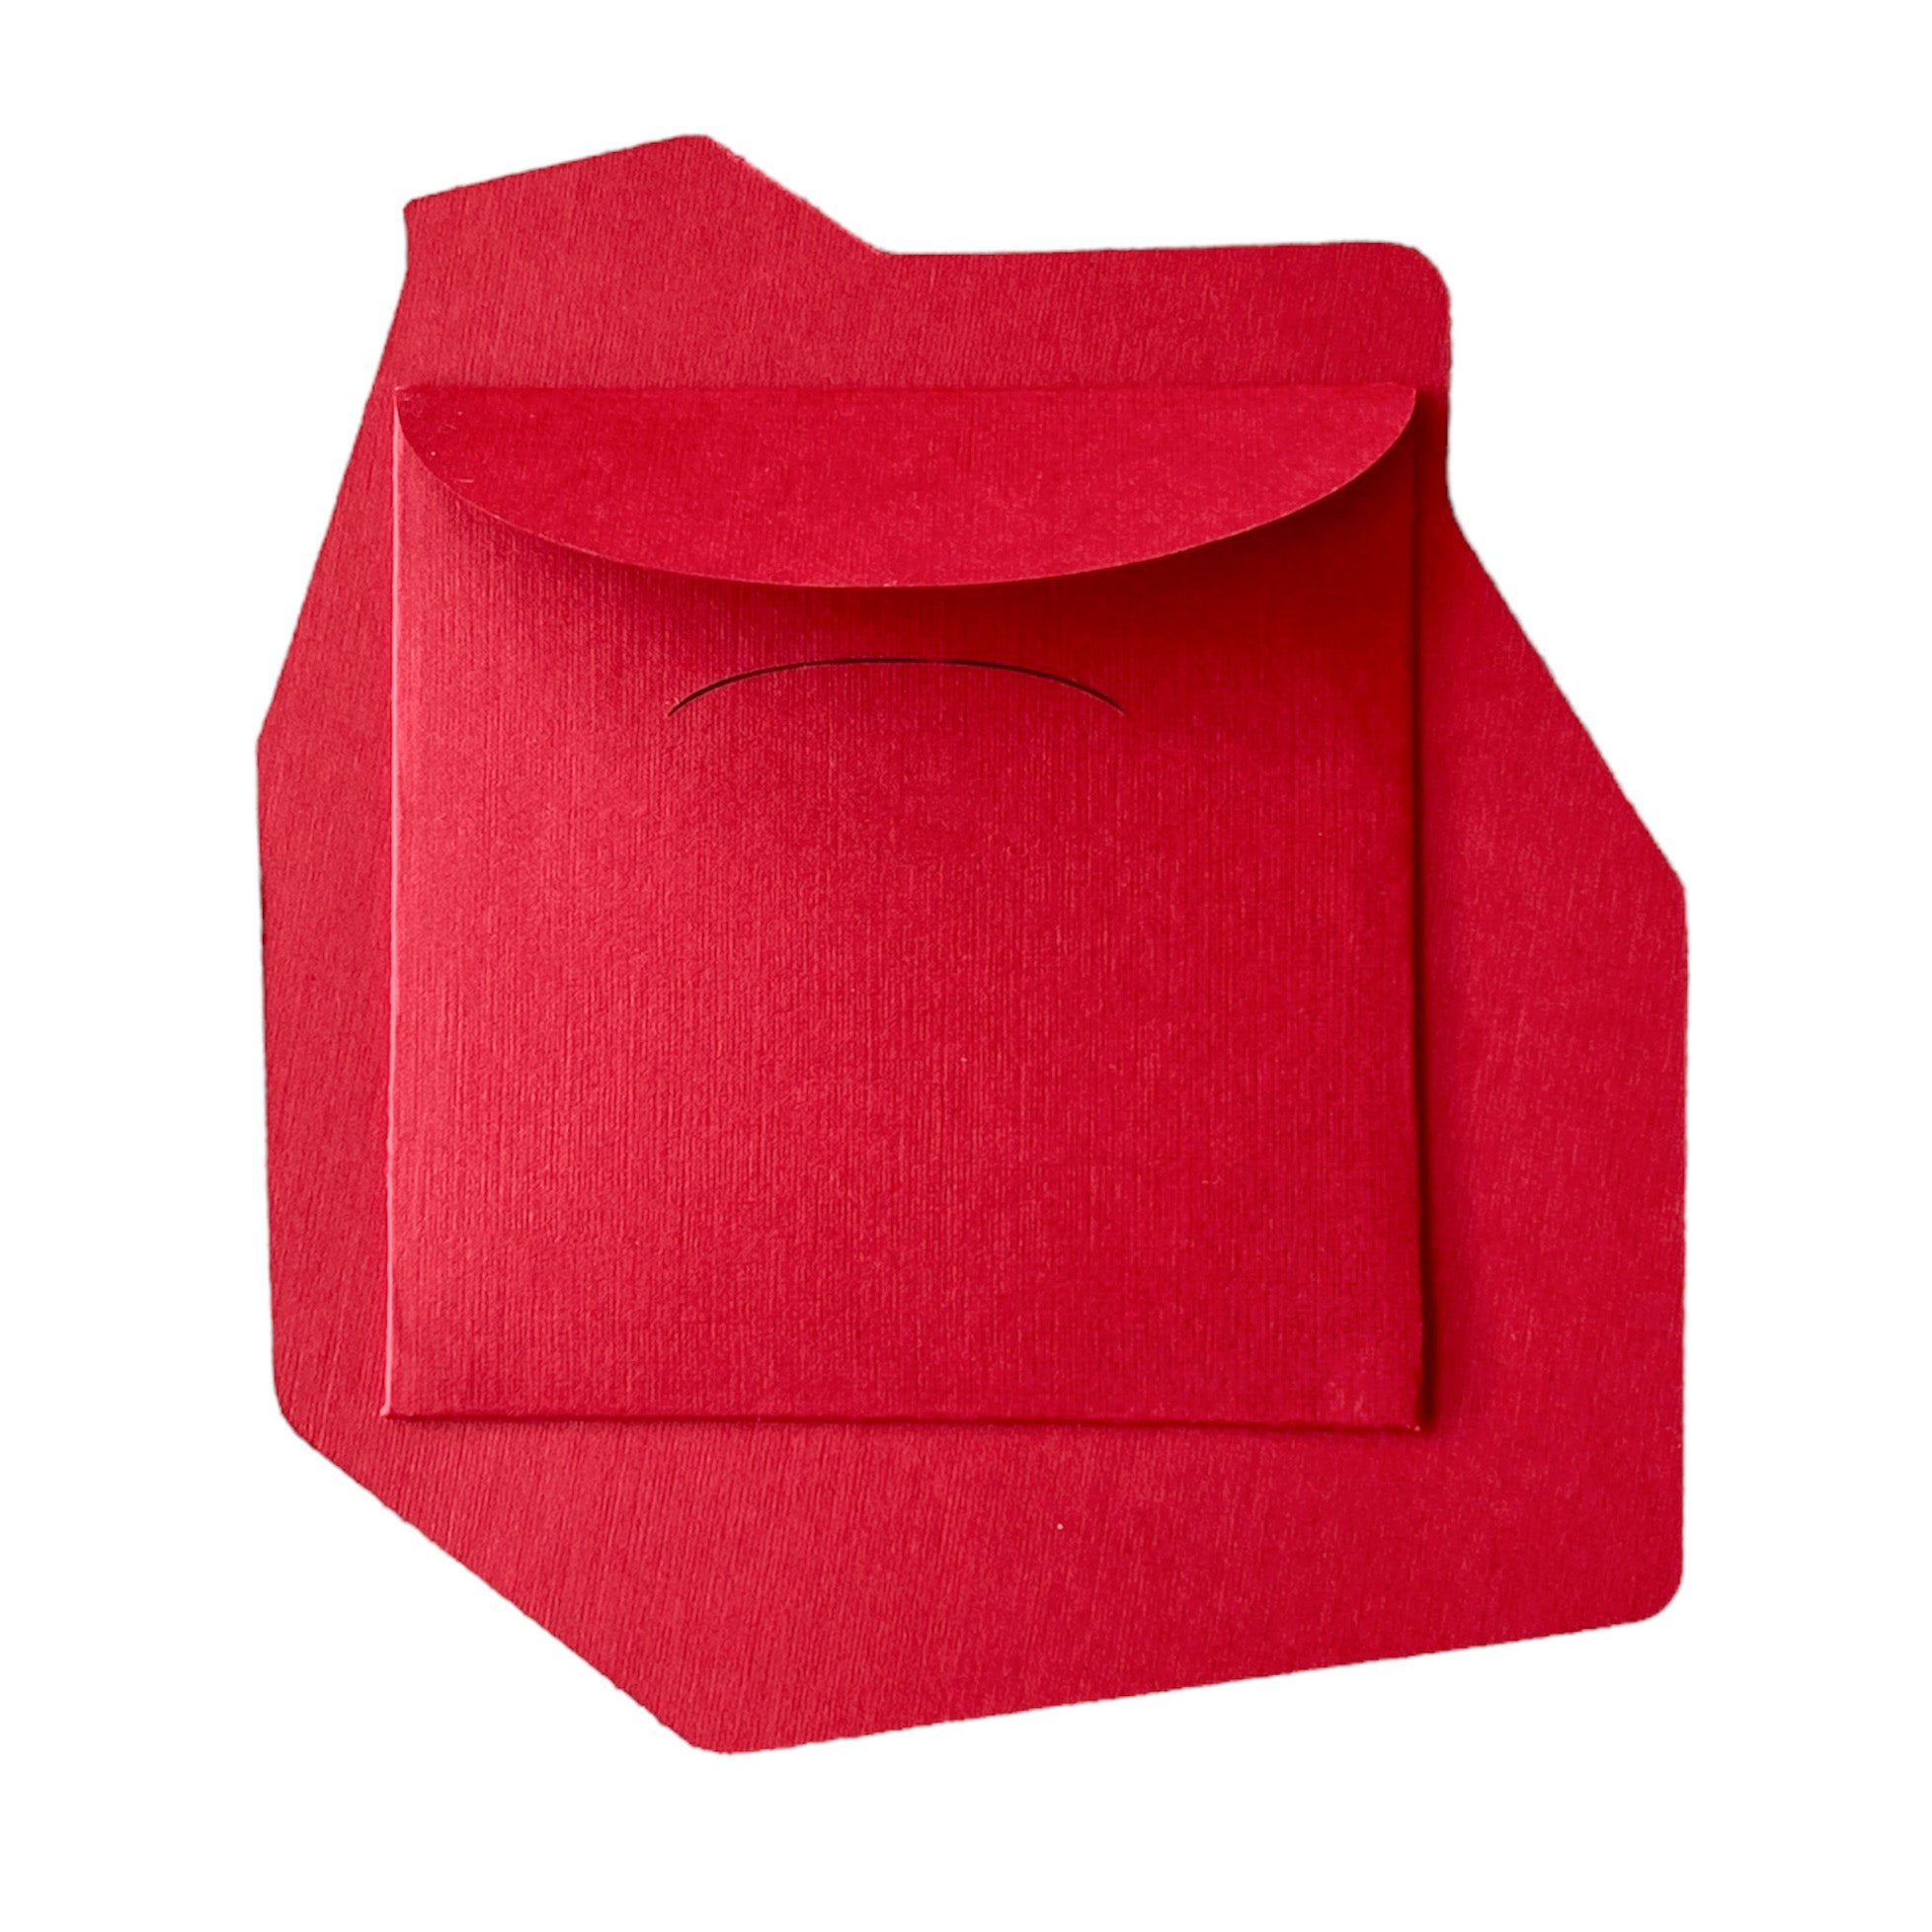 EEAAO Half & Half Red Envelope